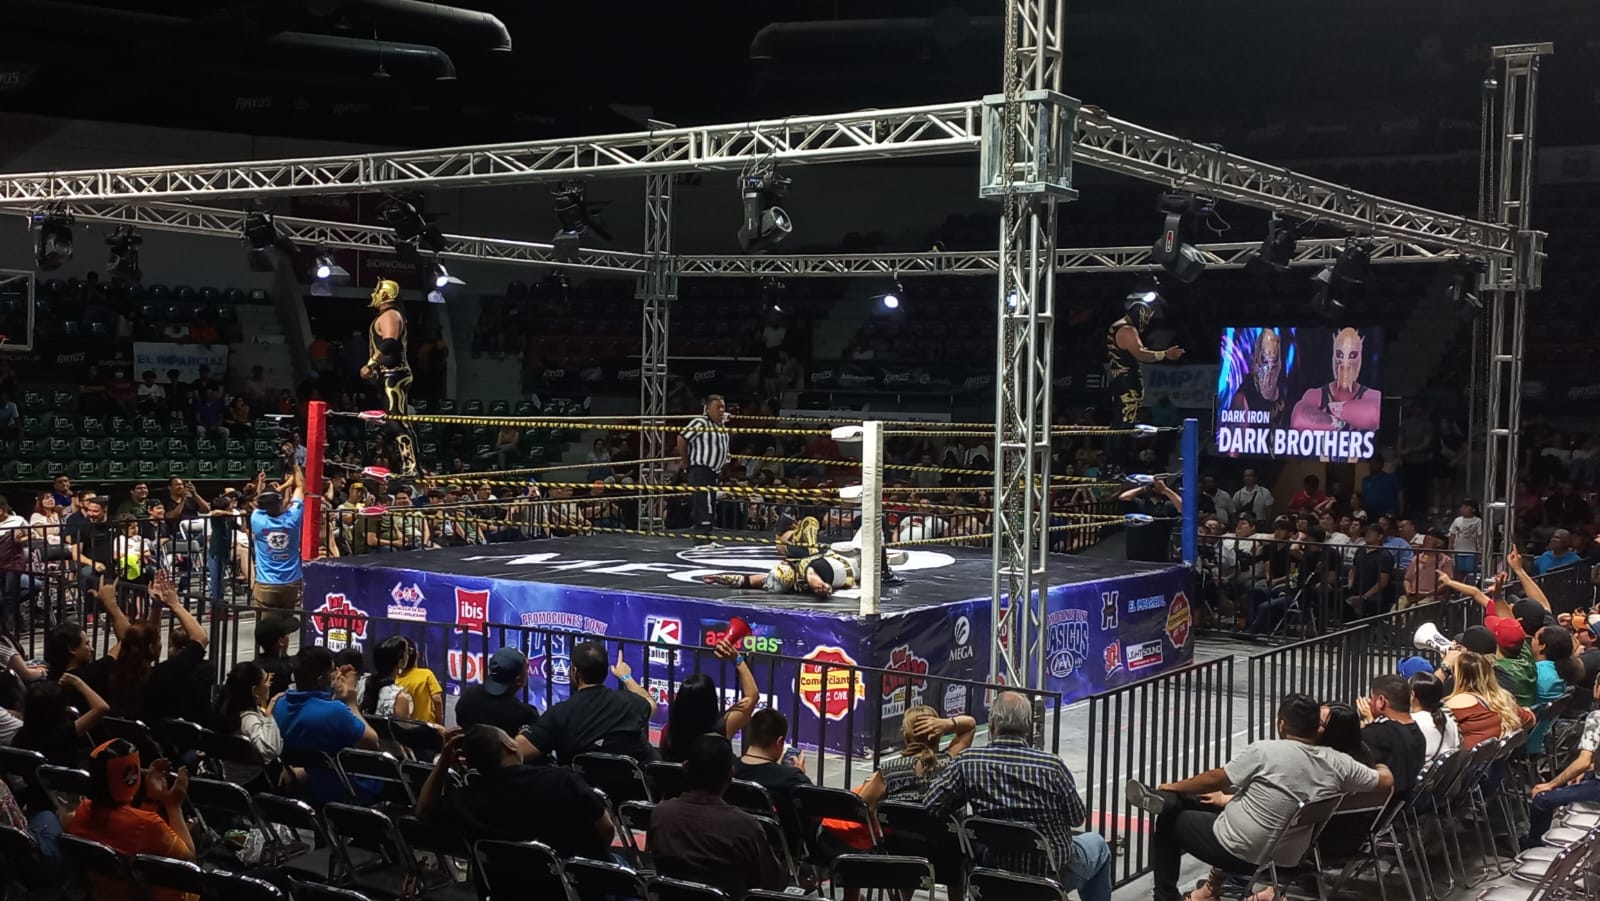 Psycho Circus derrota a Poder del Norte en Hermosillo | Deportes